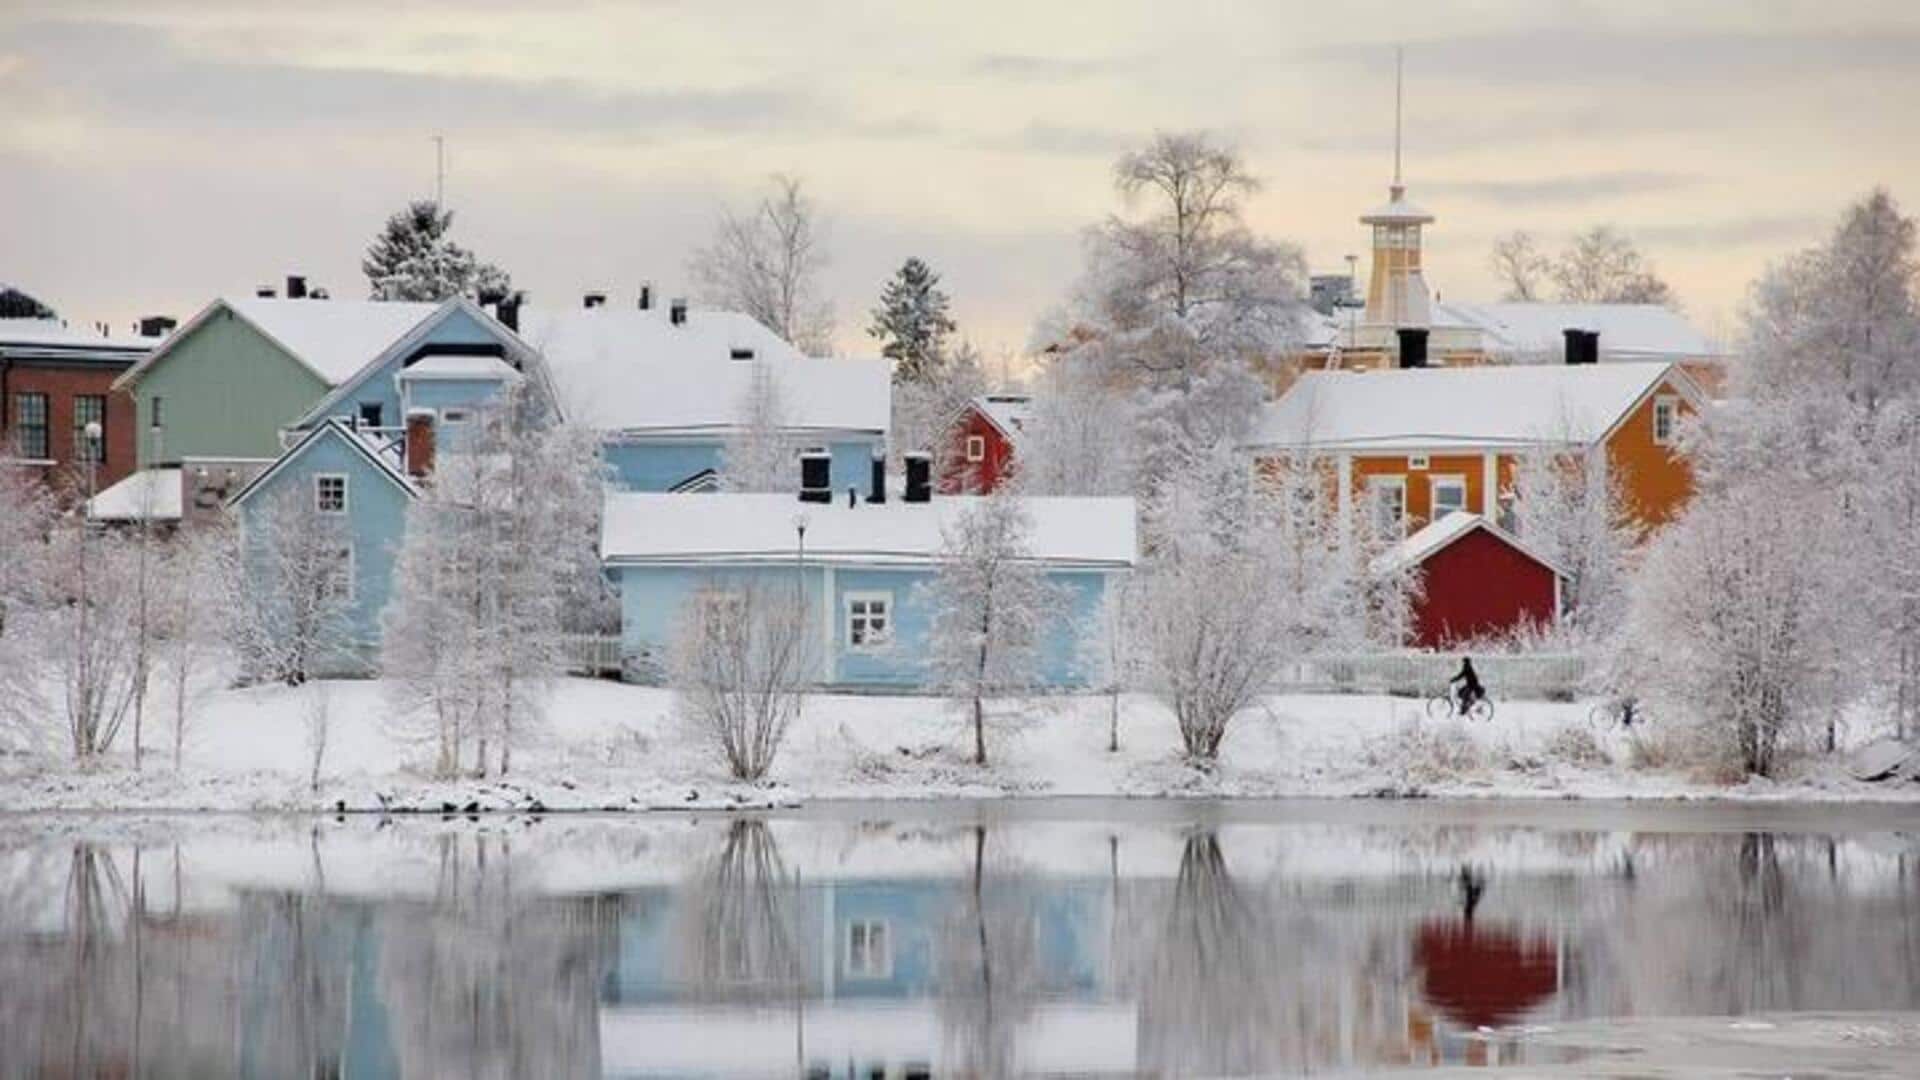 Panduan Wisata: Imajinasi Musim Dingin Di Oulu, Finlandia